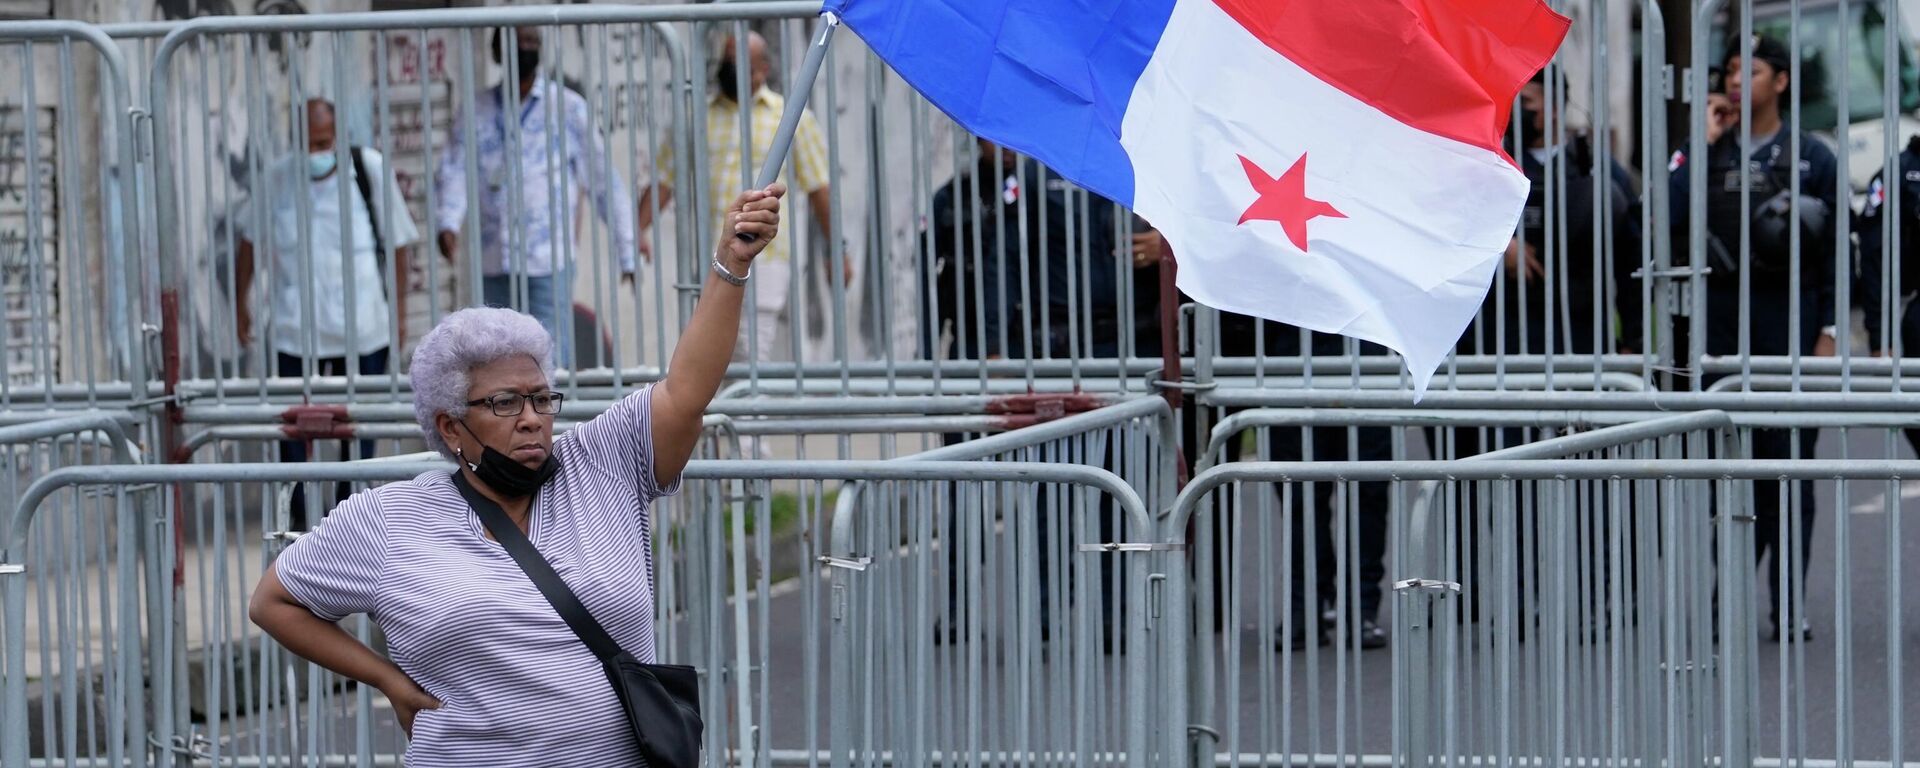 Una mujer sostiene una bandera de Panamá durante las protestas contra el Gobierno de Laurentino Cortizo en 2022 - Sputnik Mundo, 1920, 13.07.2022